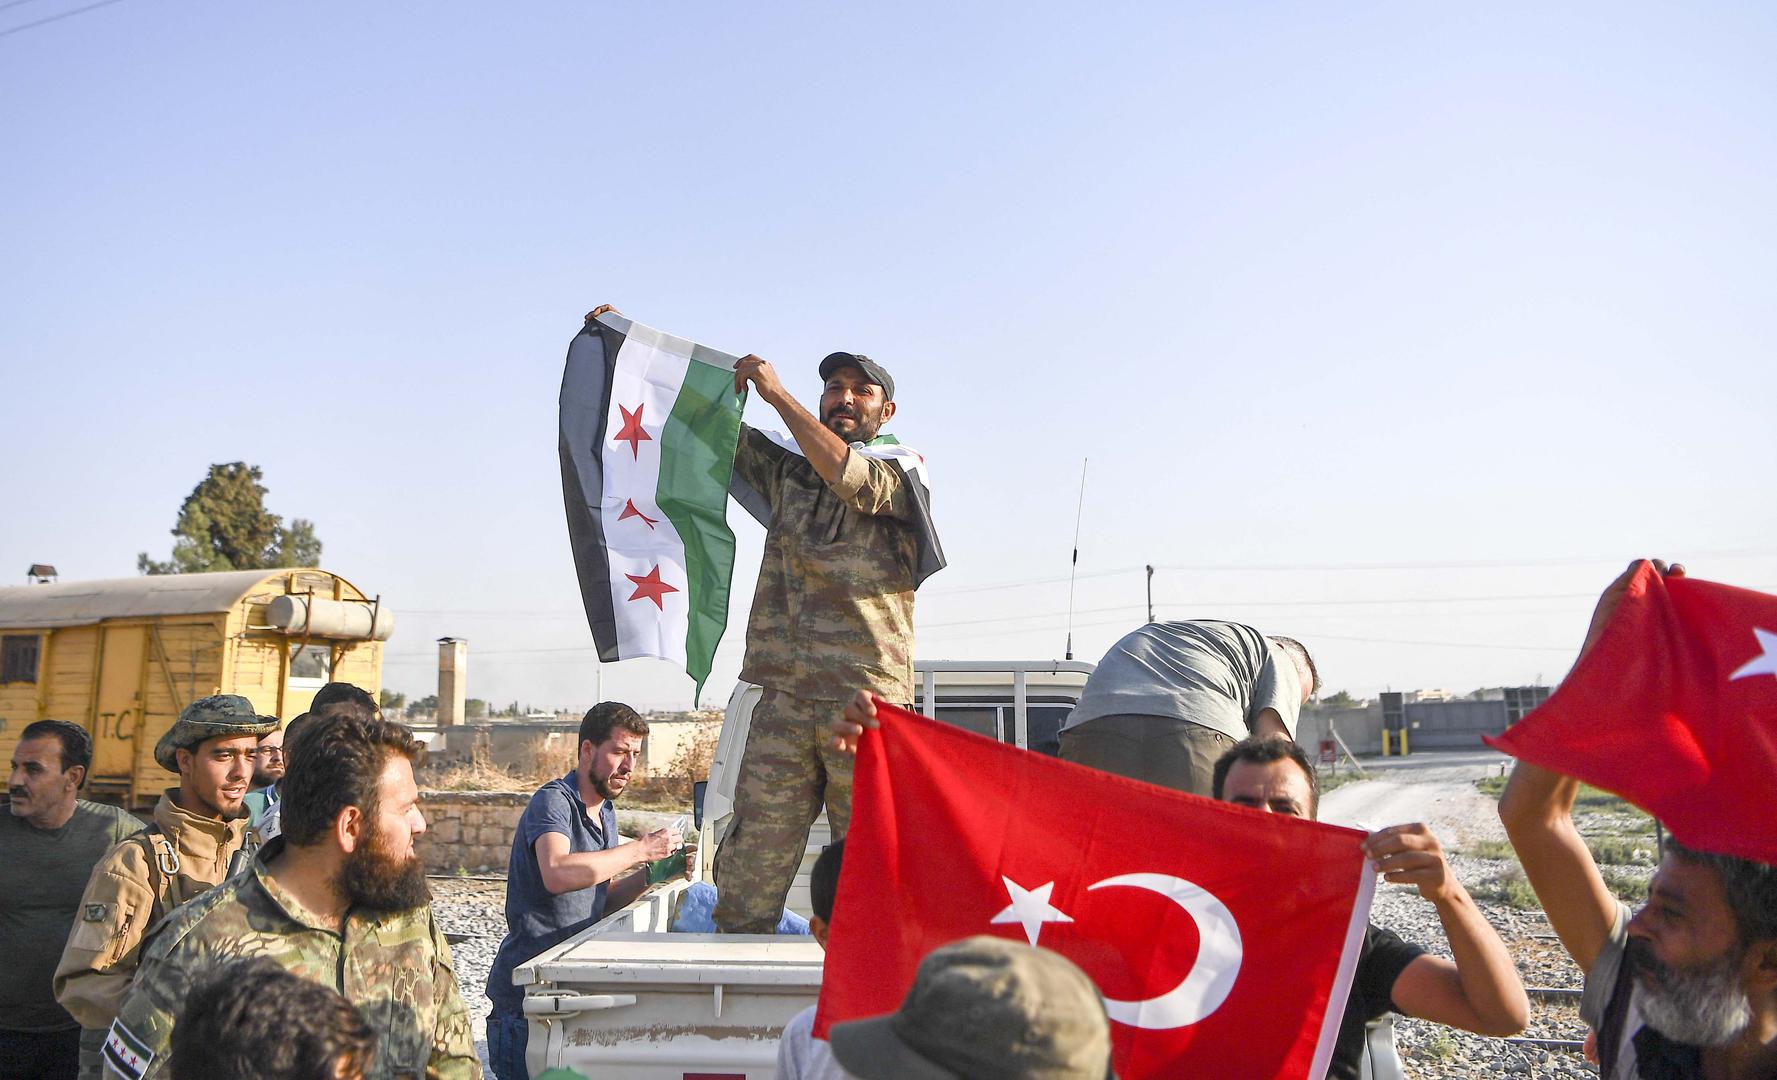 Türkiye destekli Özgür Suriye Ordusu savaşçıları (Suriye Ulusal Ordusu olarak da bilinir) Tel Abyad kasabasına giriyor. 